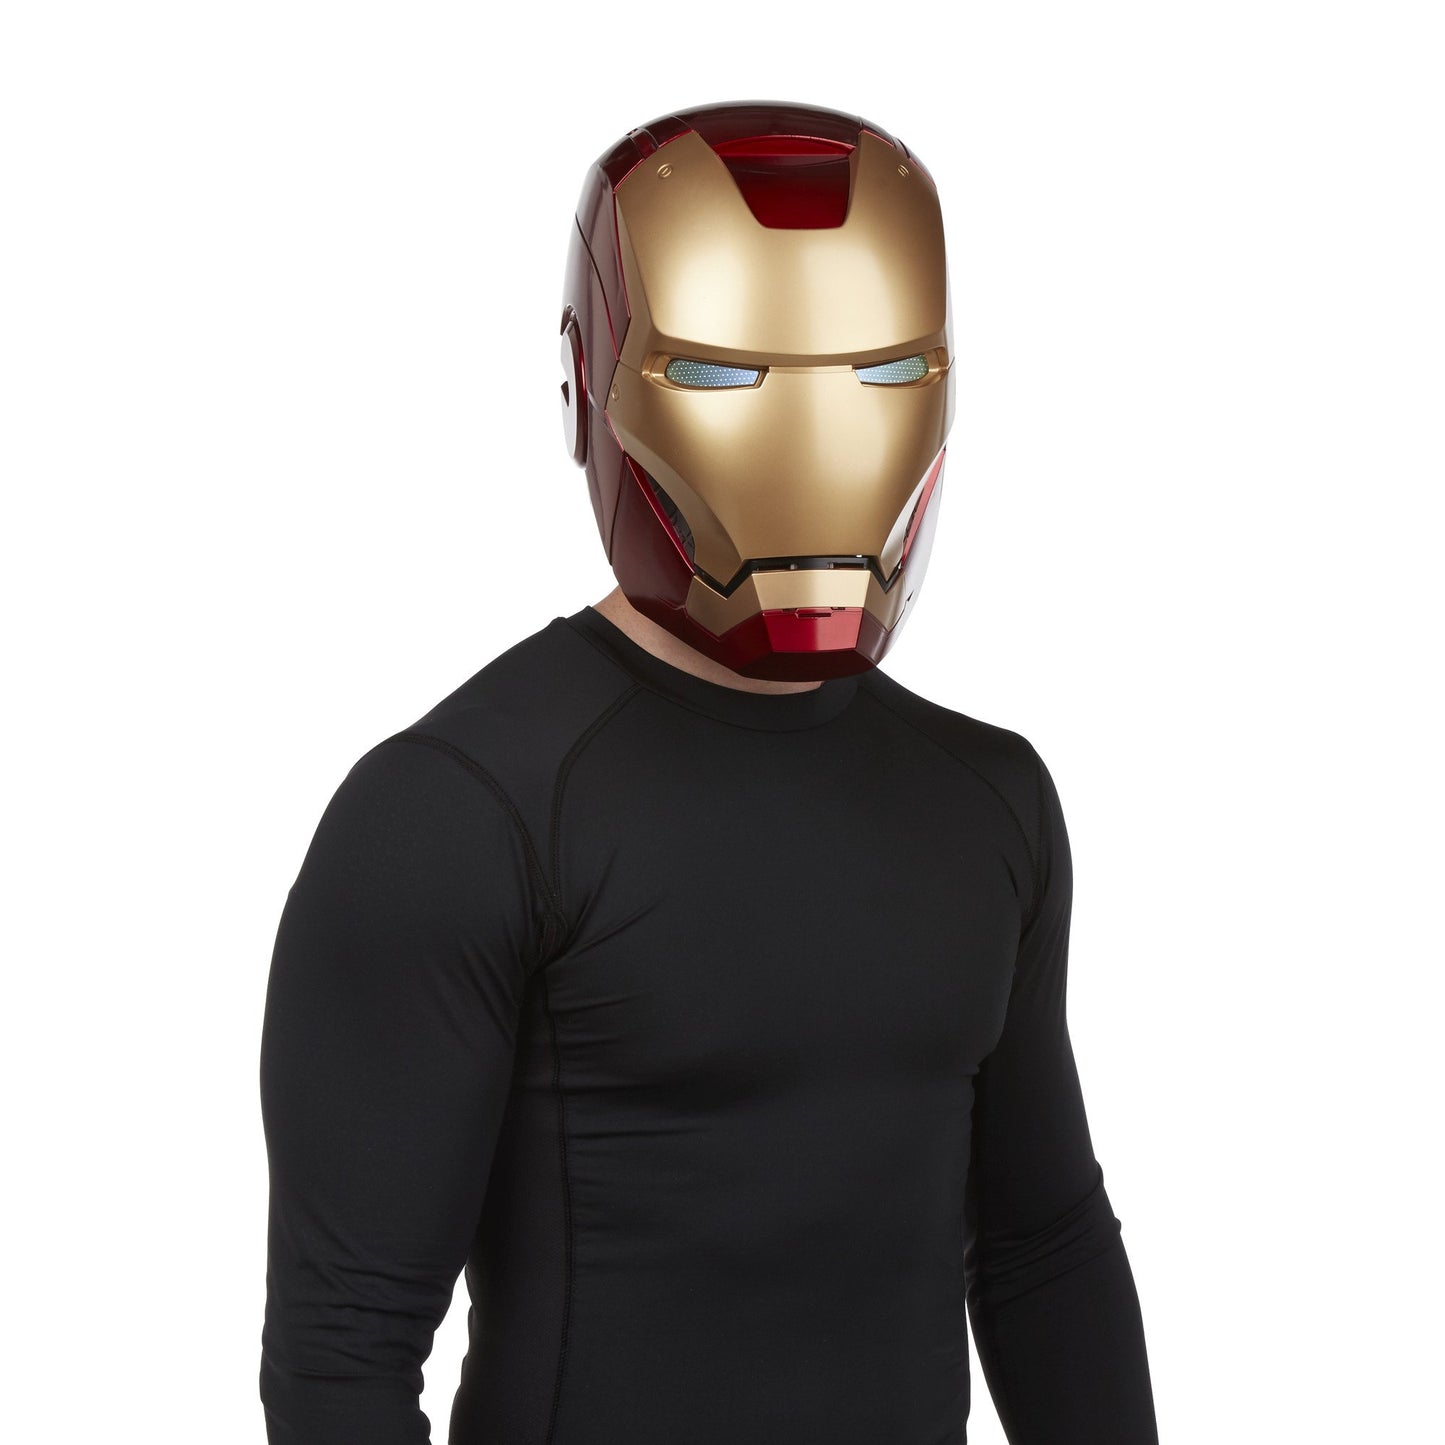 Avengers Legends Gear Iron Man Helmet Figure